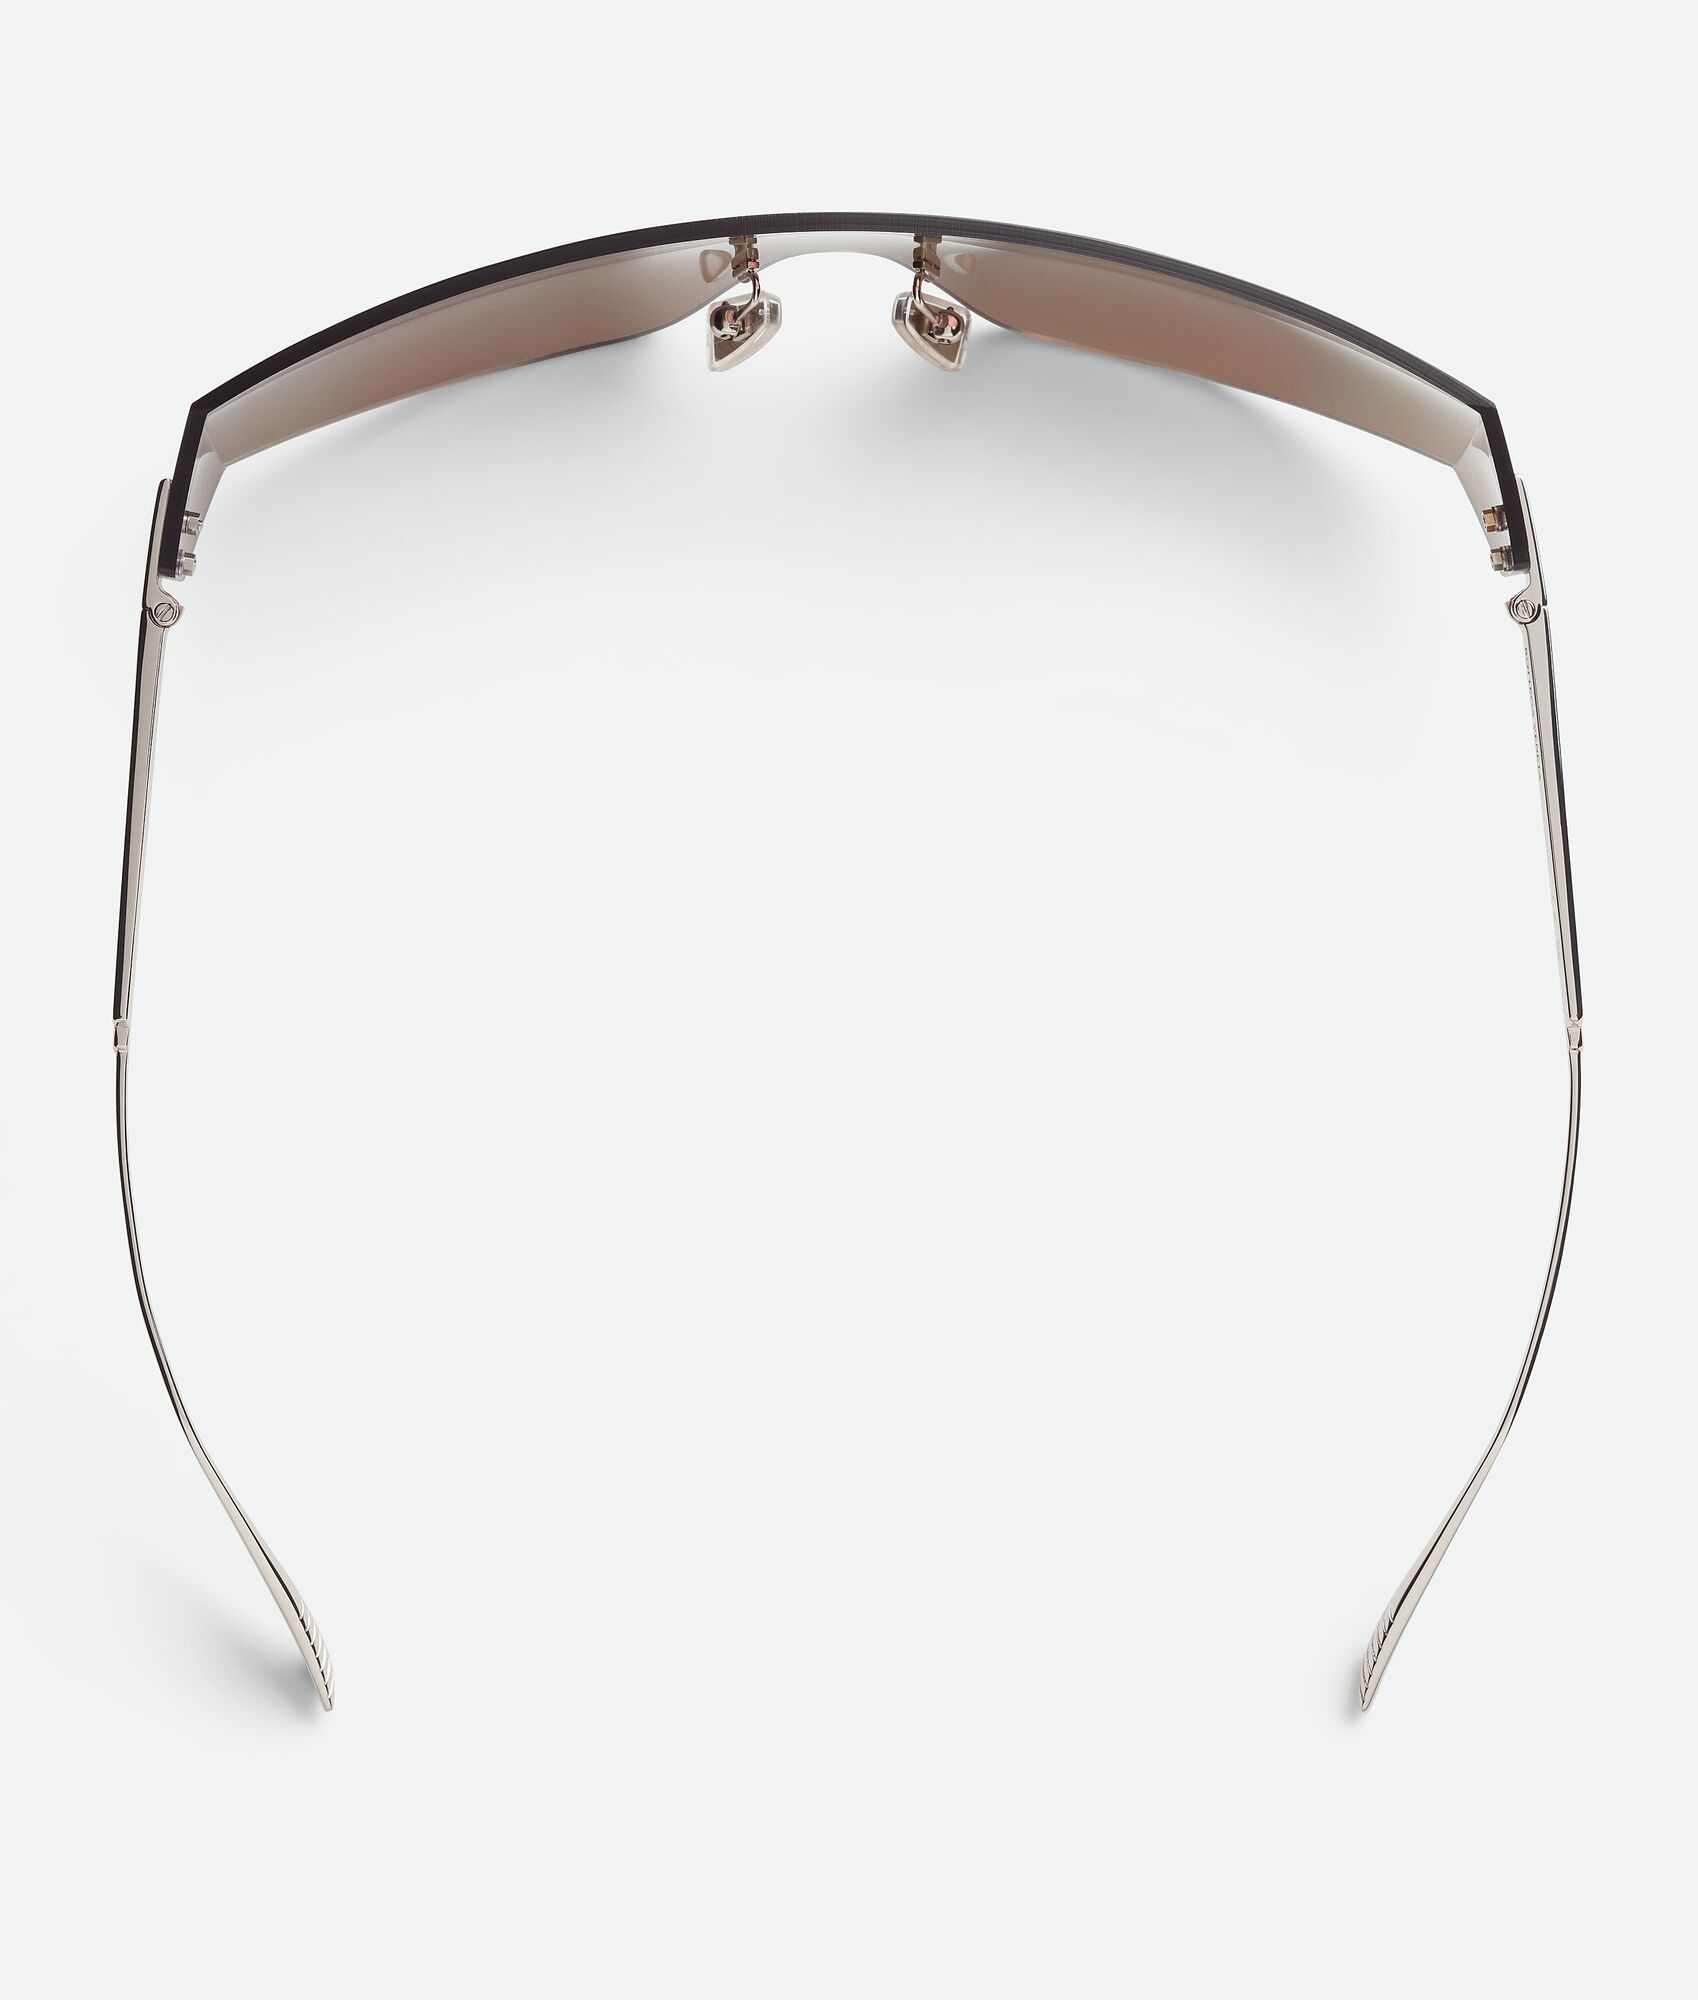 Futuristic Shield Sunglasses - 4